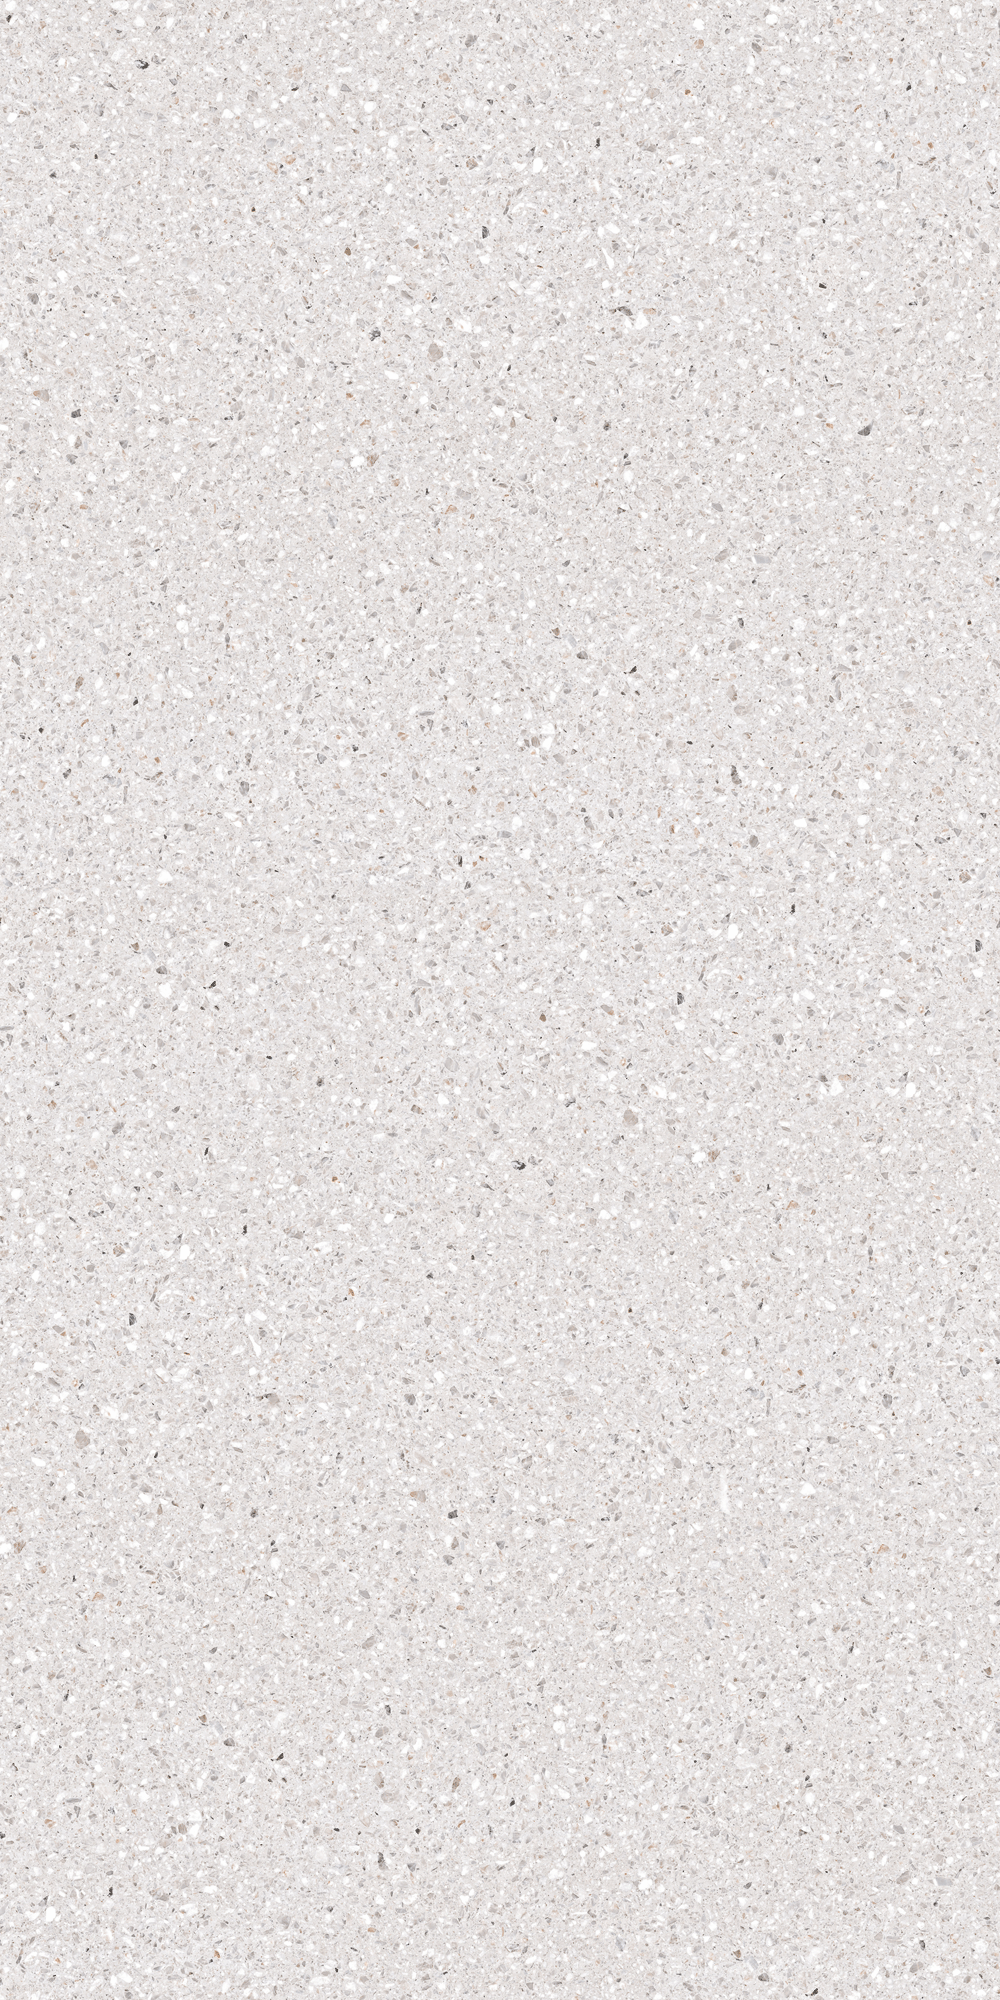 Tấm sứ nung kết bằng đá trắng Terrazzo 320x160
